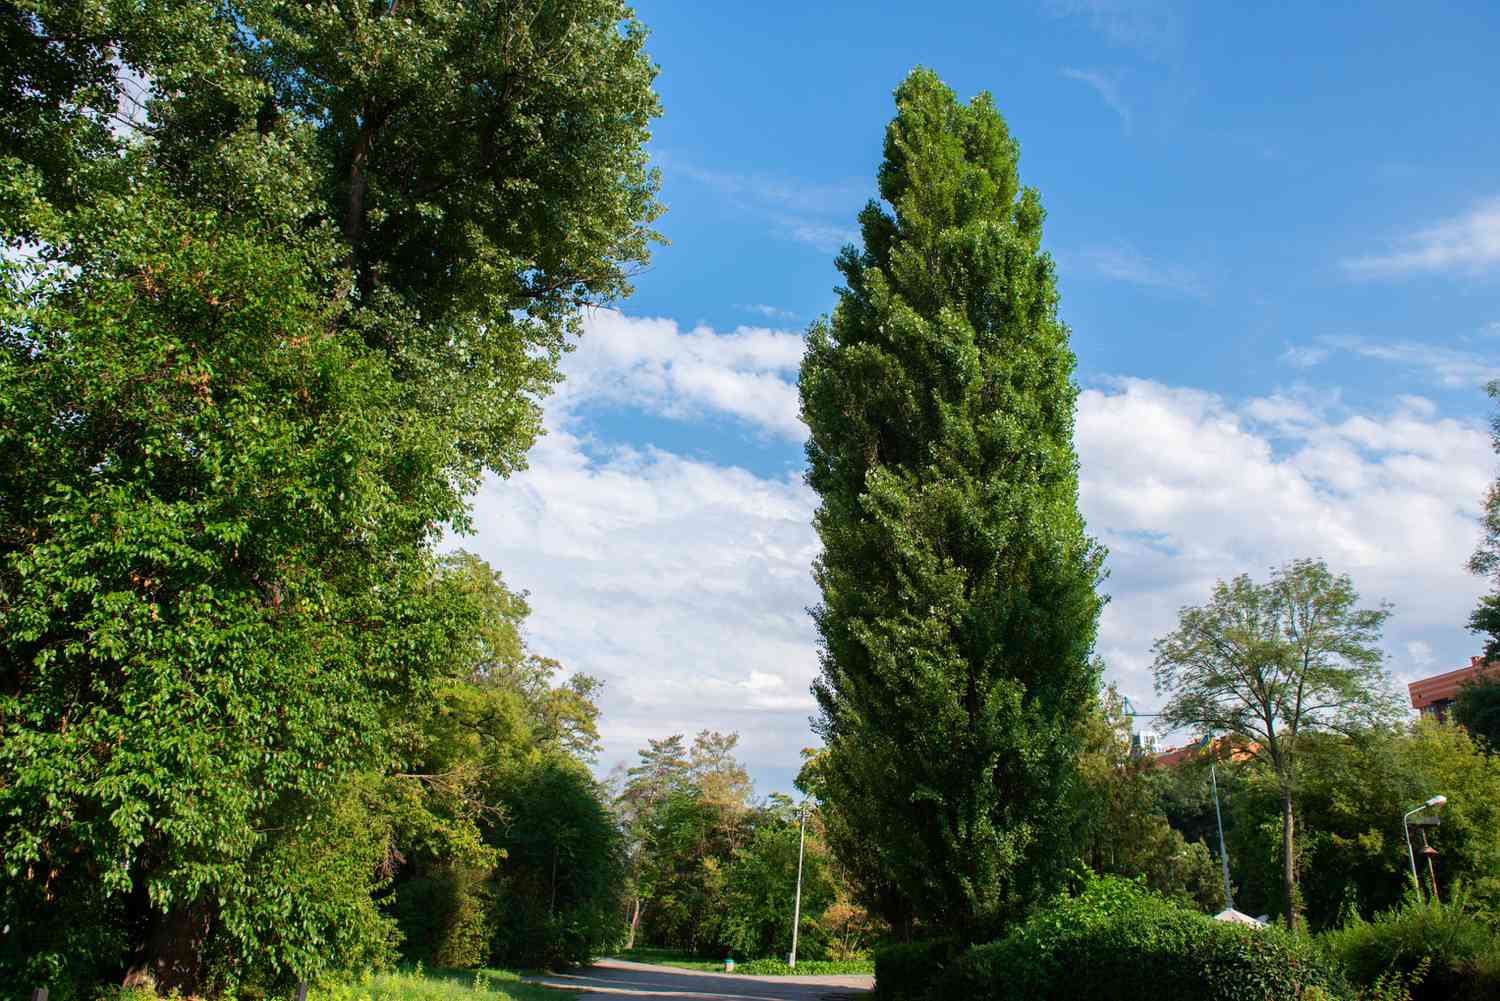 Lombardische Pappelbäume mit säulenförmigen Stämmen und nach oben gerichteten Ästen in der Nähe eines Weges